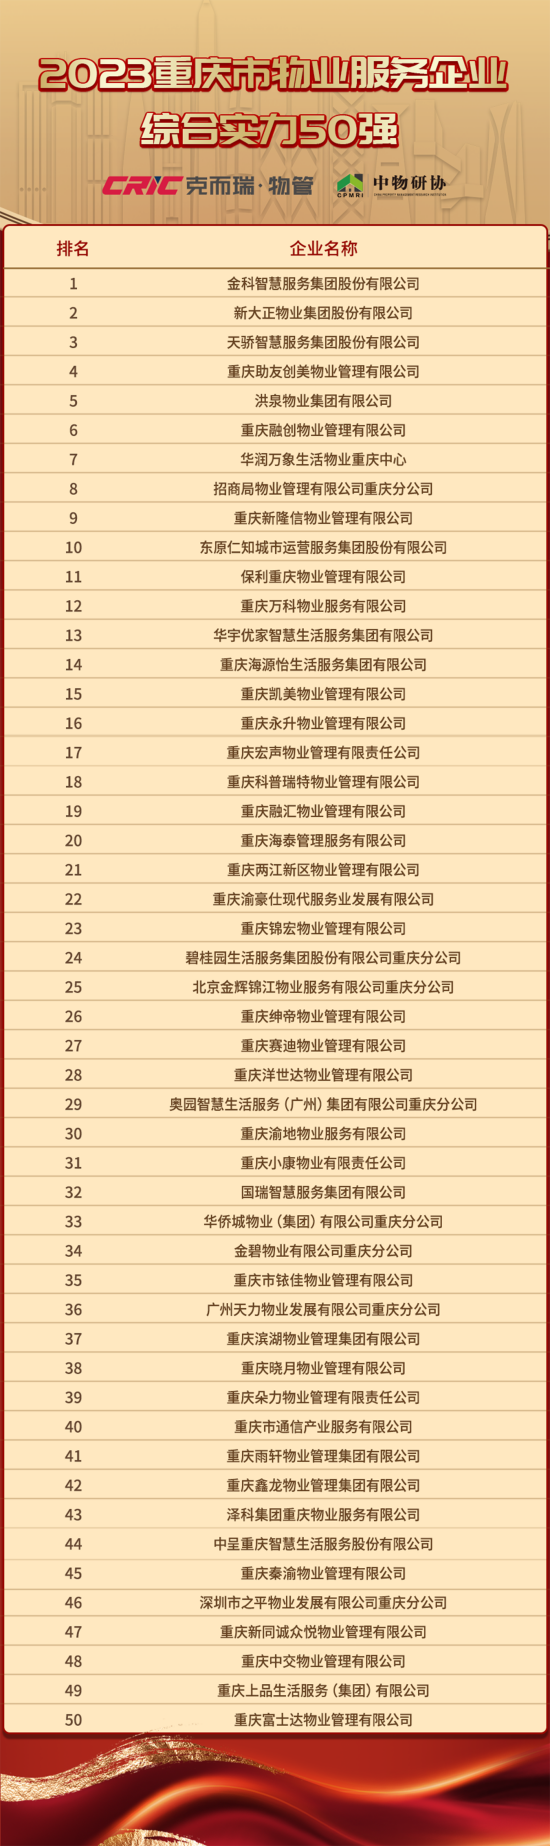 2023年重庆市物业服务企业综合实力50强